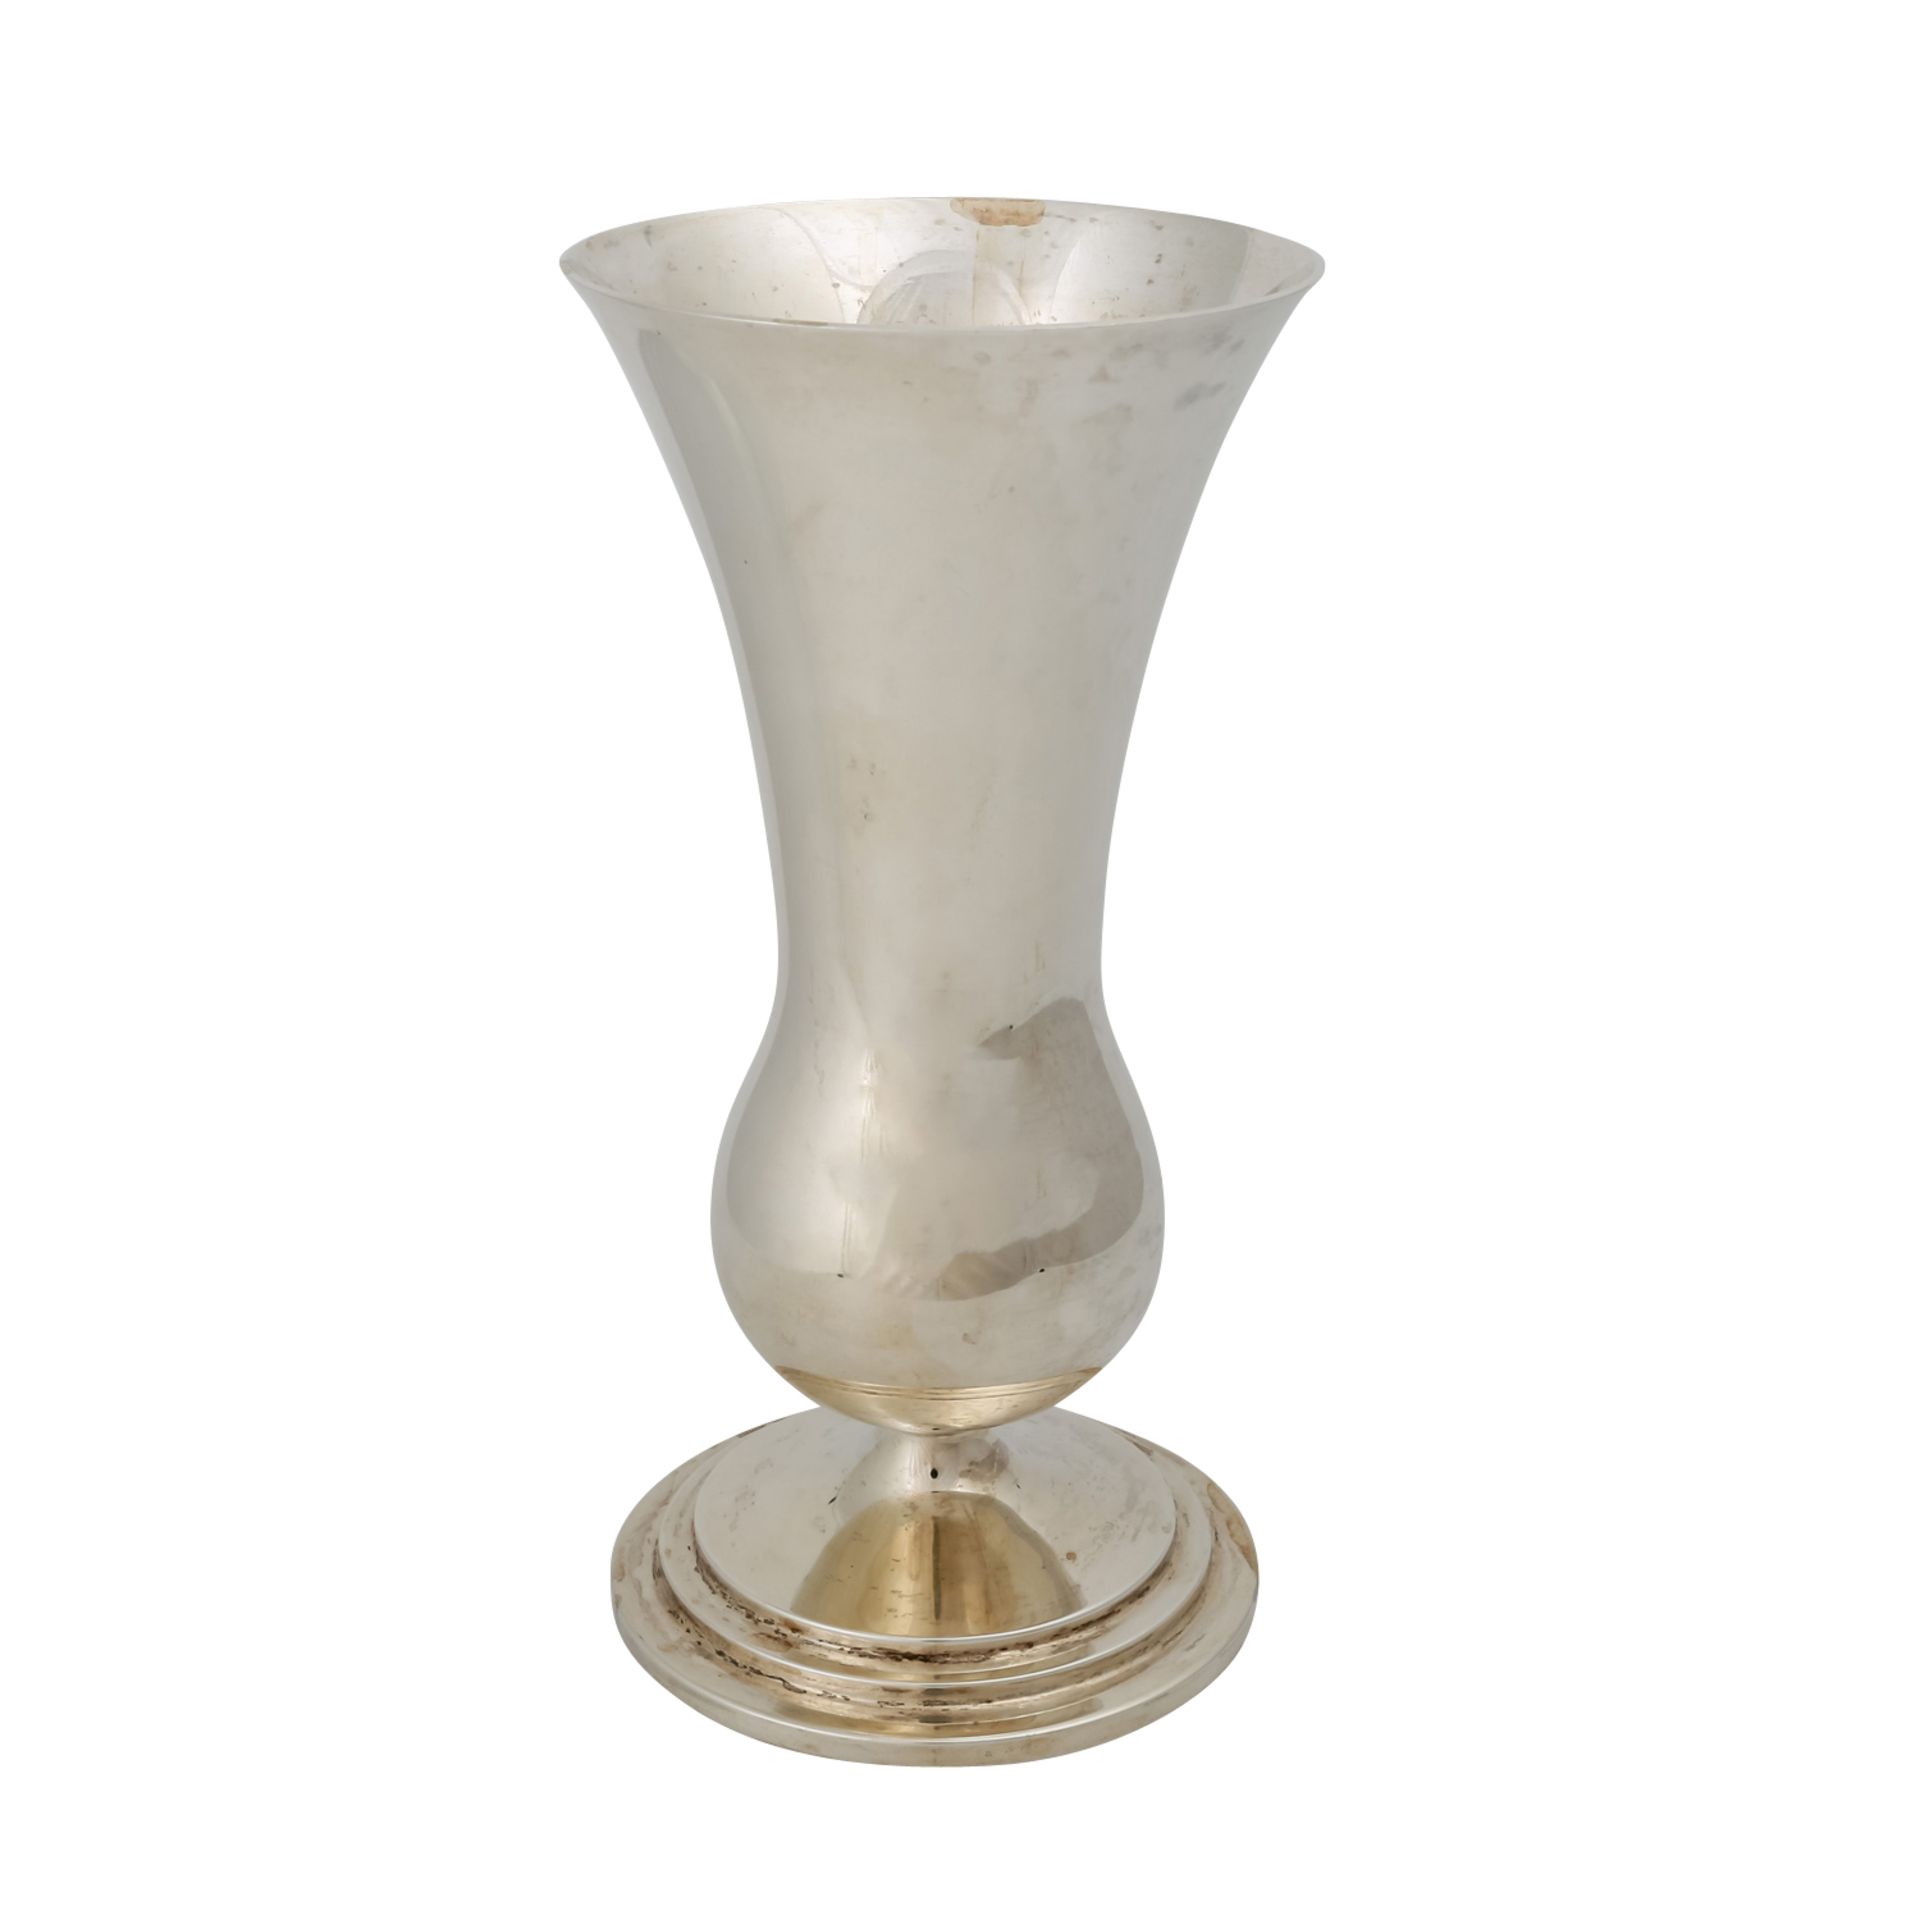 WILKENS & SÖHNE Vase, 20. Jh.runder Stand, getreppt, balusterartige Form, Marken: MZ, Halbmond, - Bild 3 aus 5